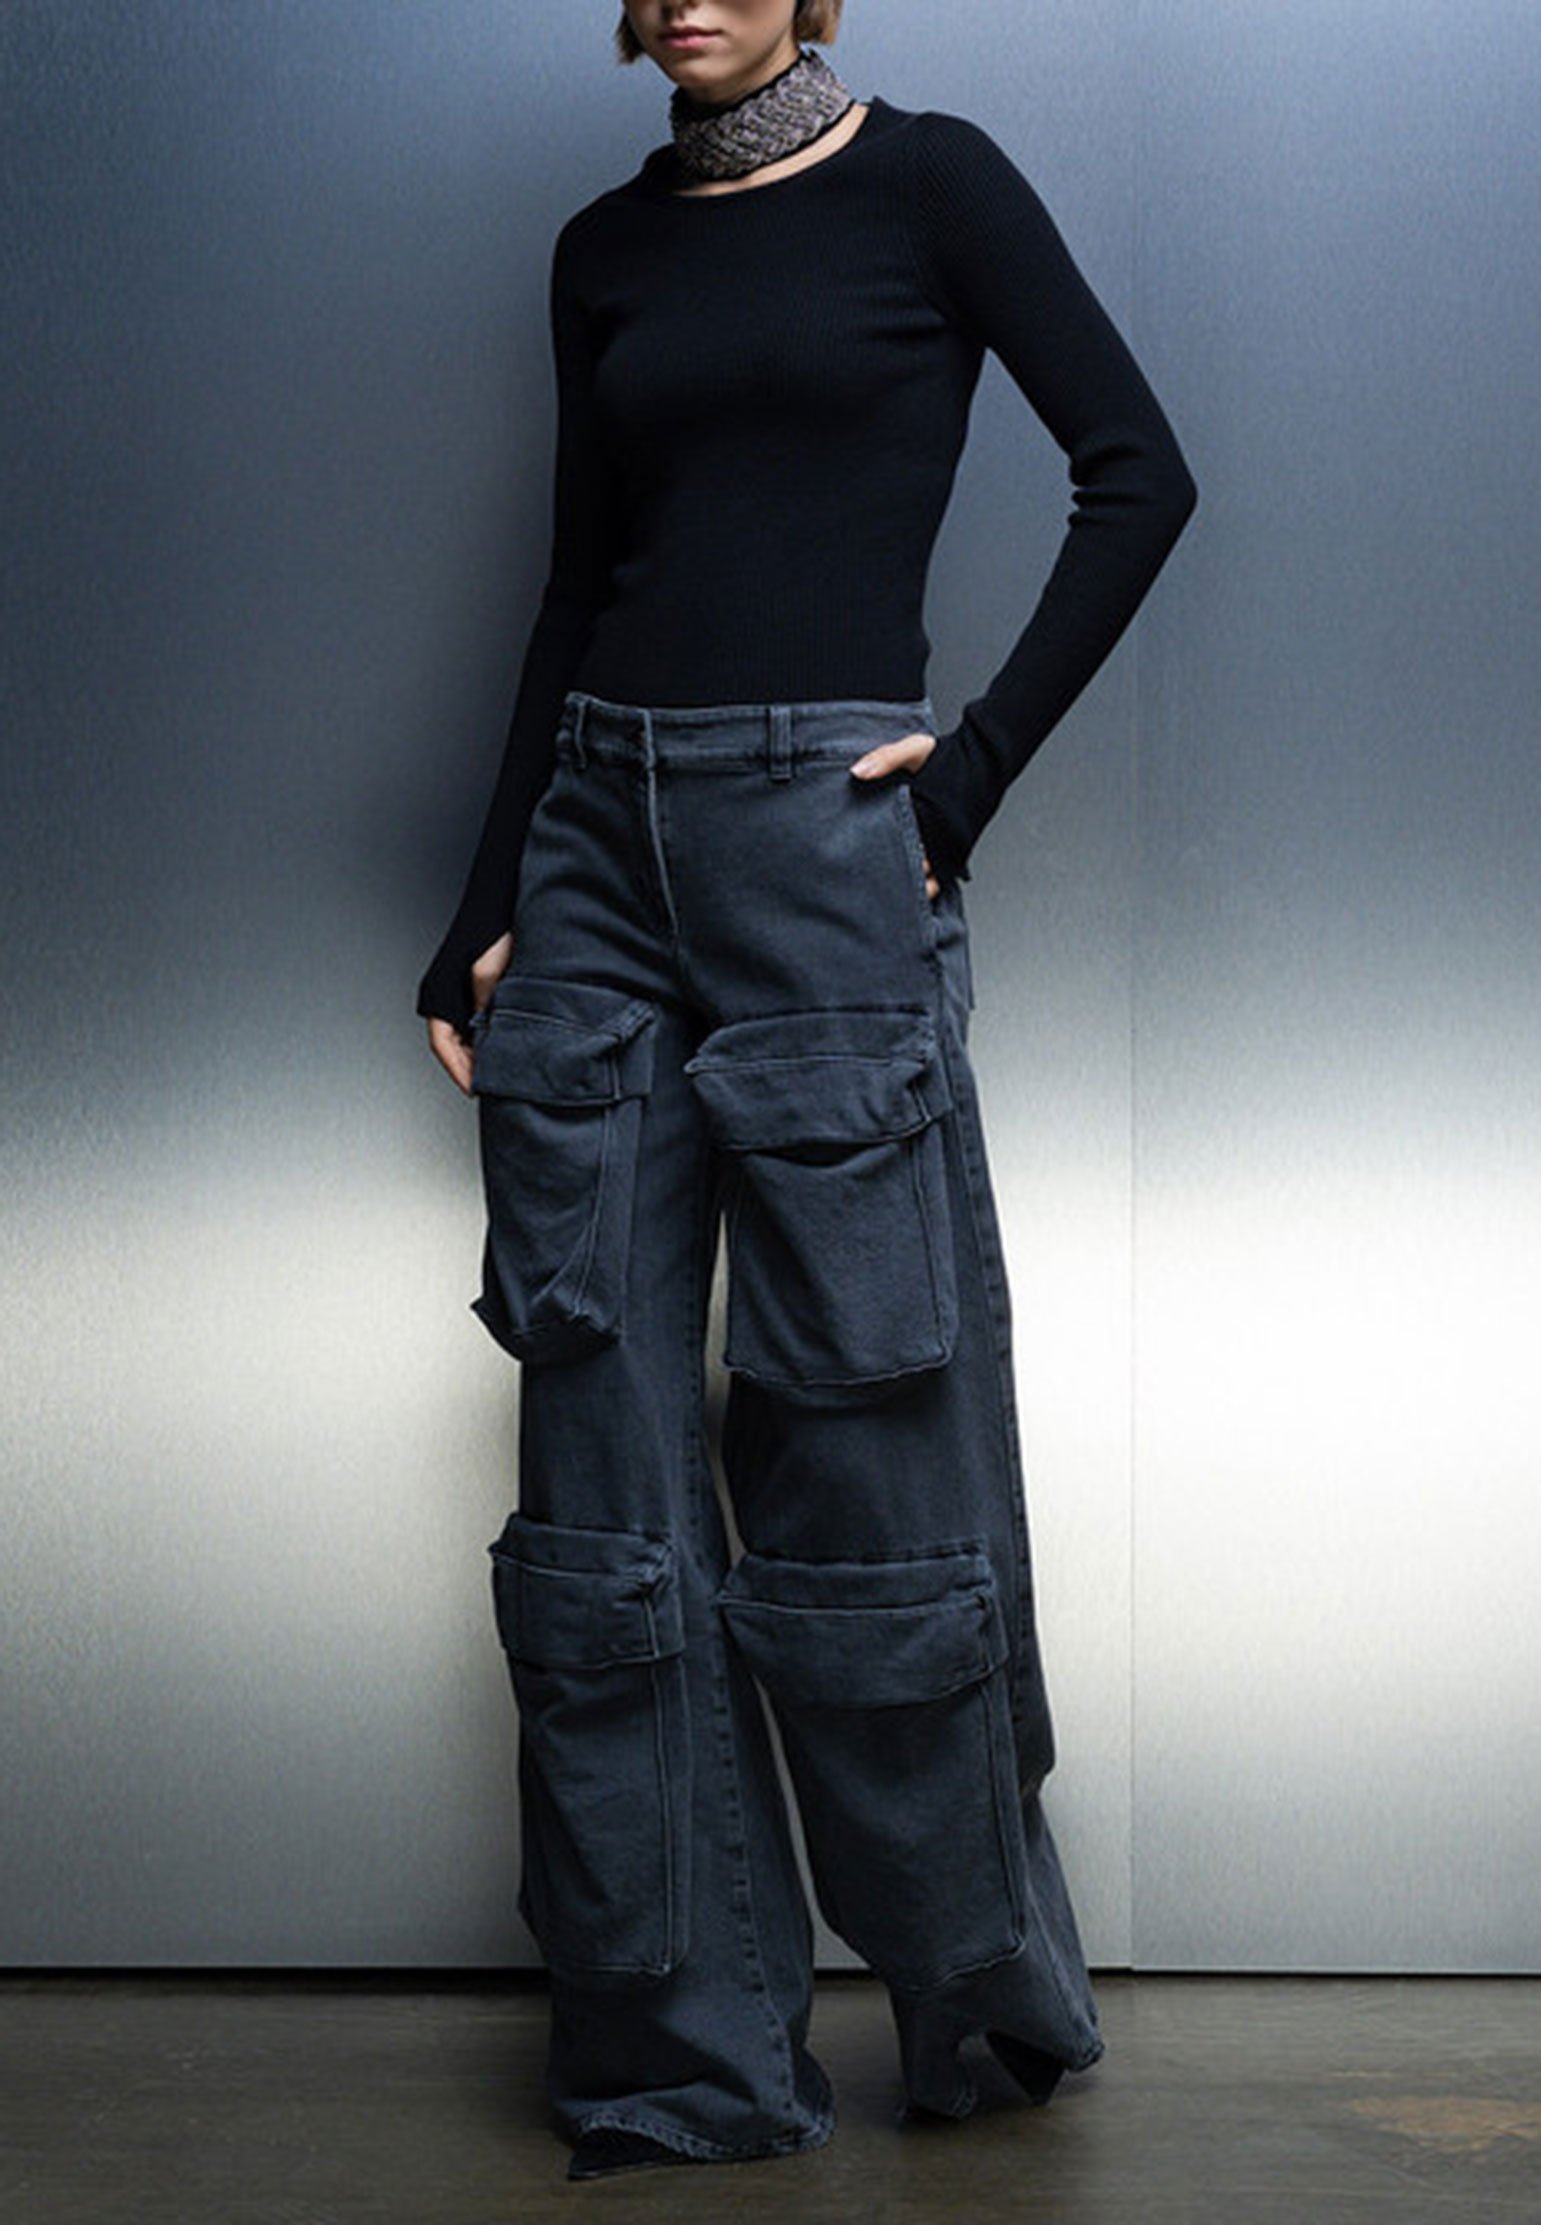 Pullover GIUSEPPE DI MORABITO Color: black (Code: 2603) in online store Allure